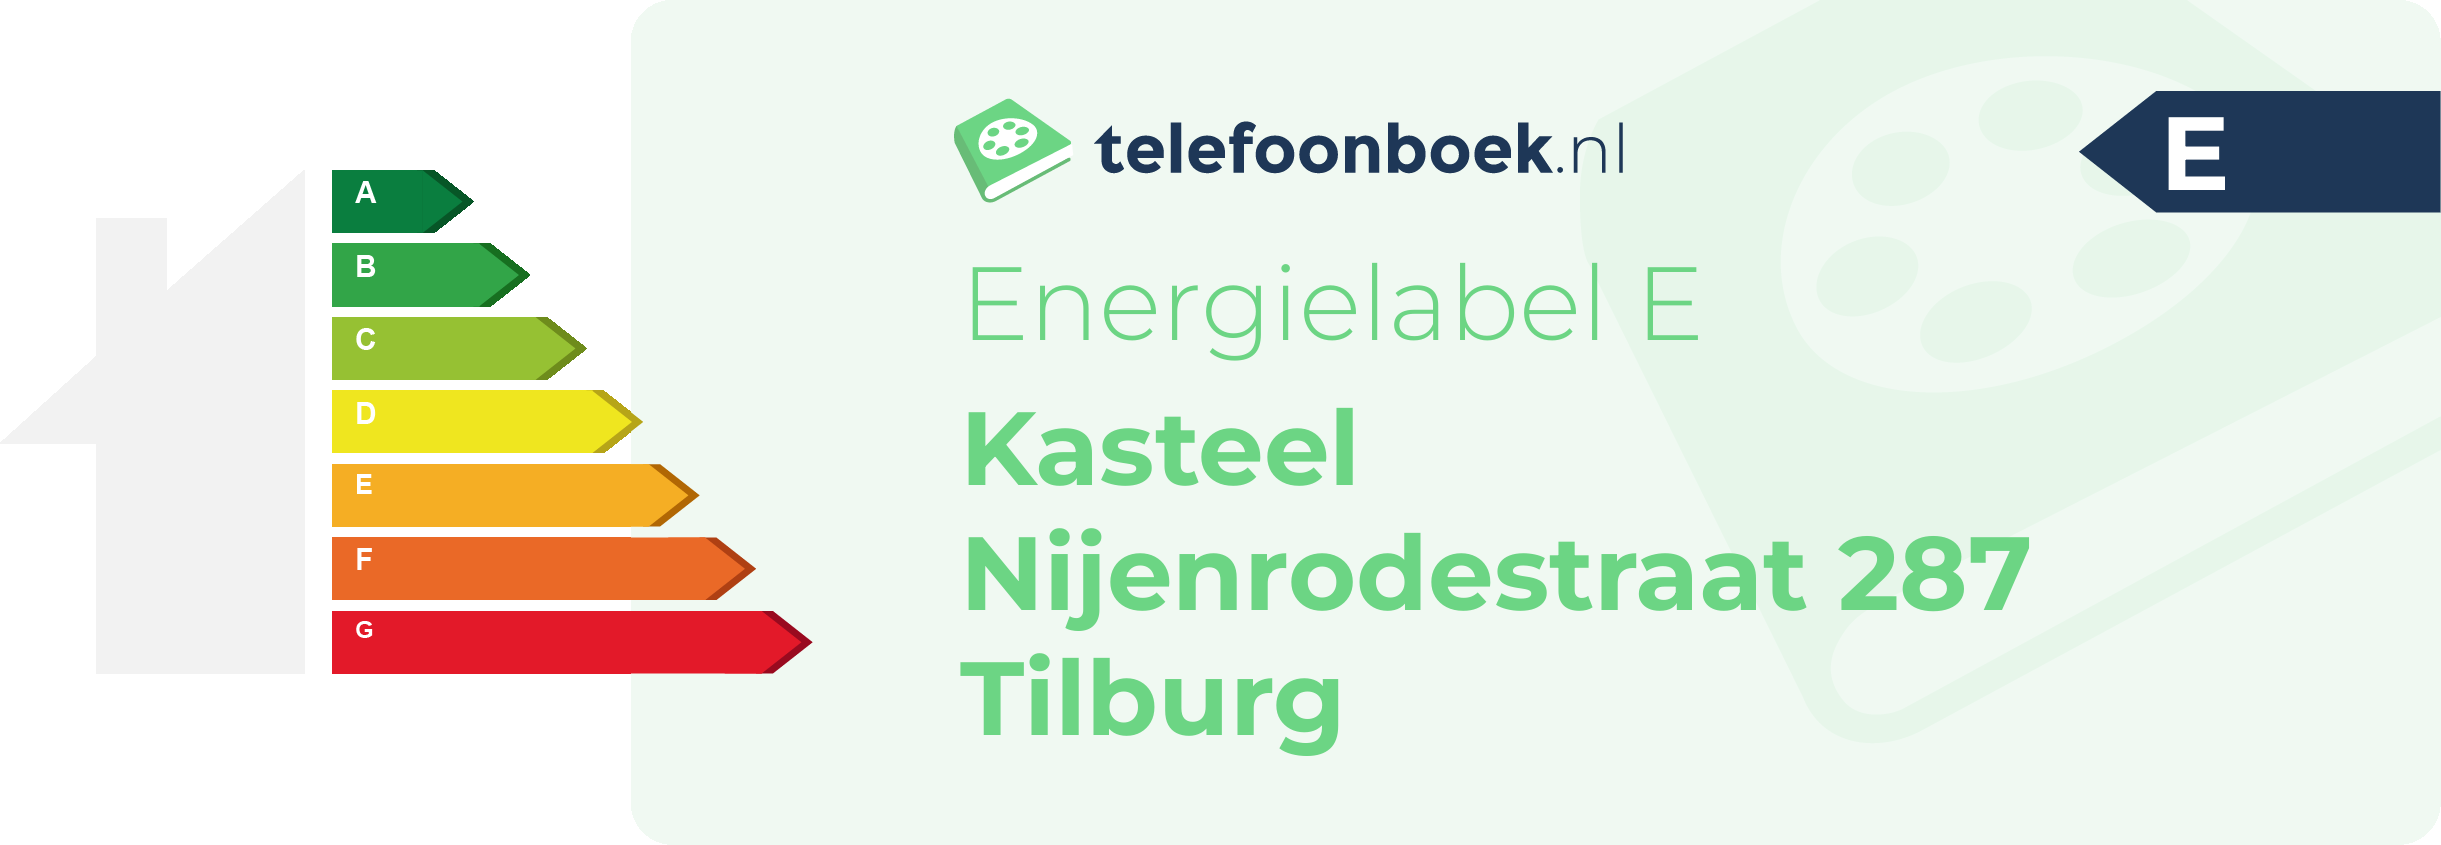 Energielabel Kasteel Nijenrodestraat 287 Tilburg